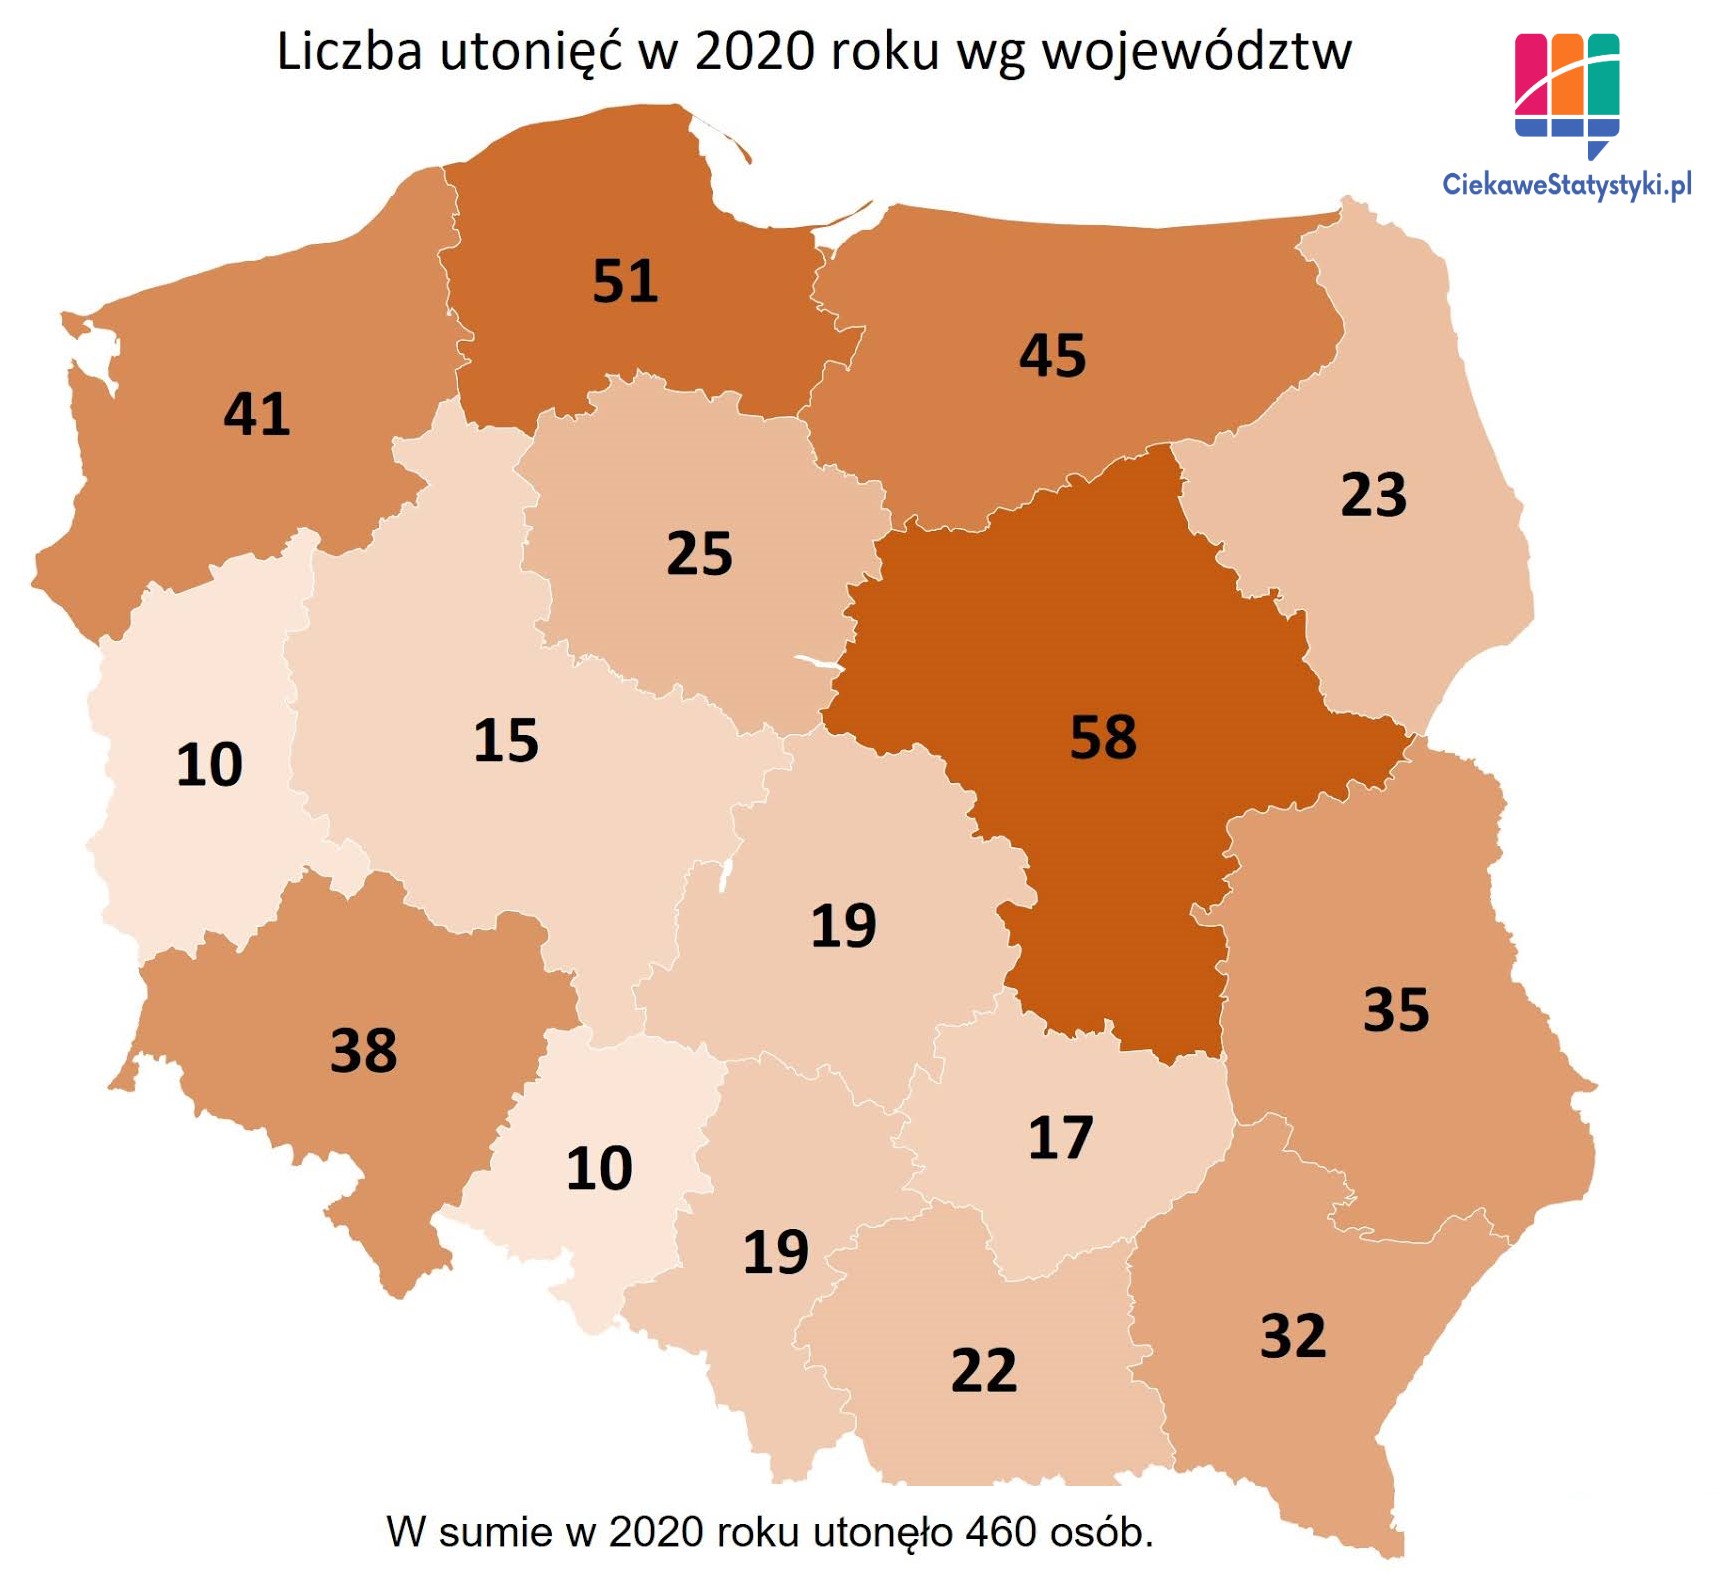 Ilość utonięć w Polsce przedstawiona na mapie